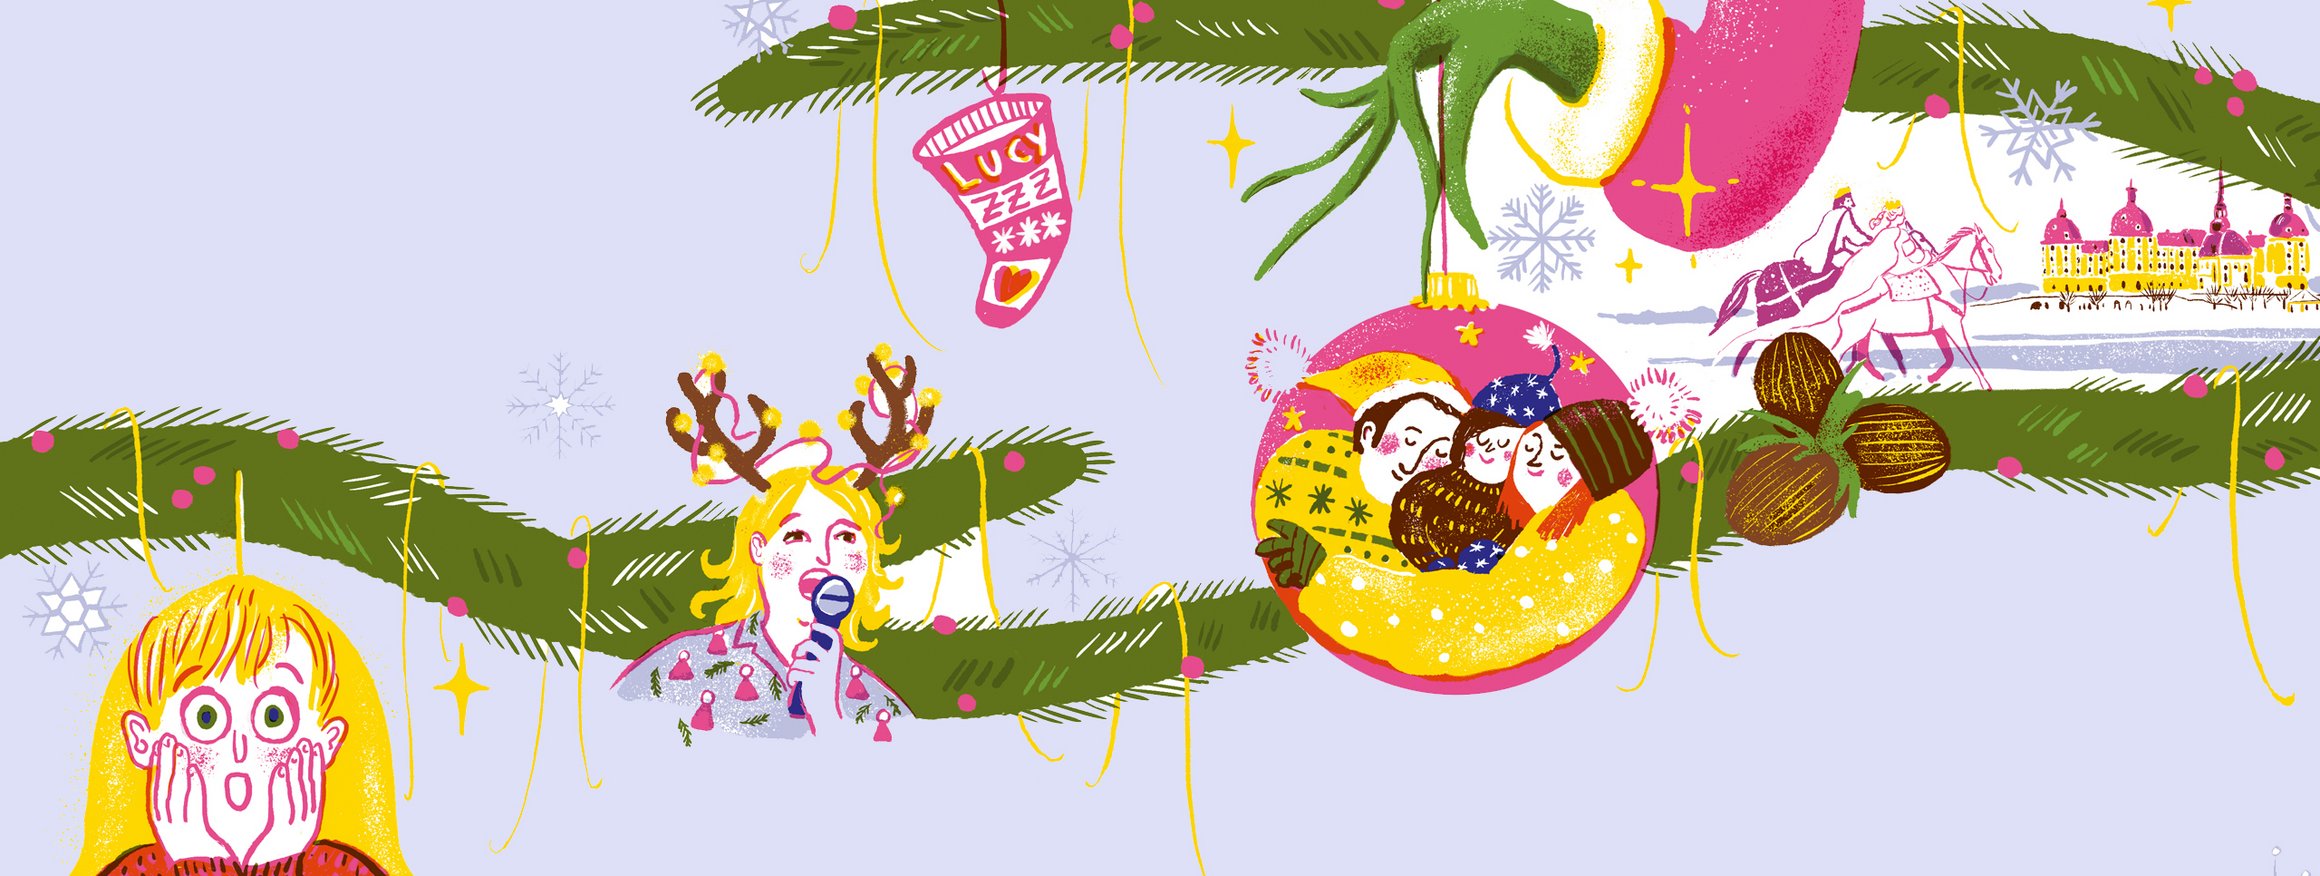 Die Illustration zeigt verschiedene berühmte Weihnachtsfilmfiguren, wie zum Beispiel den Grinch 